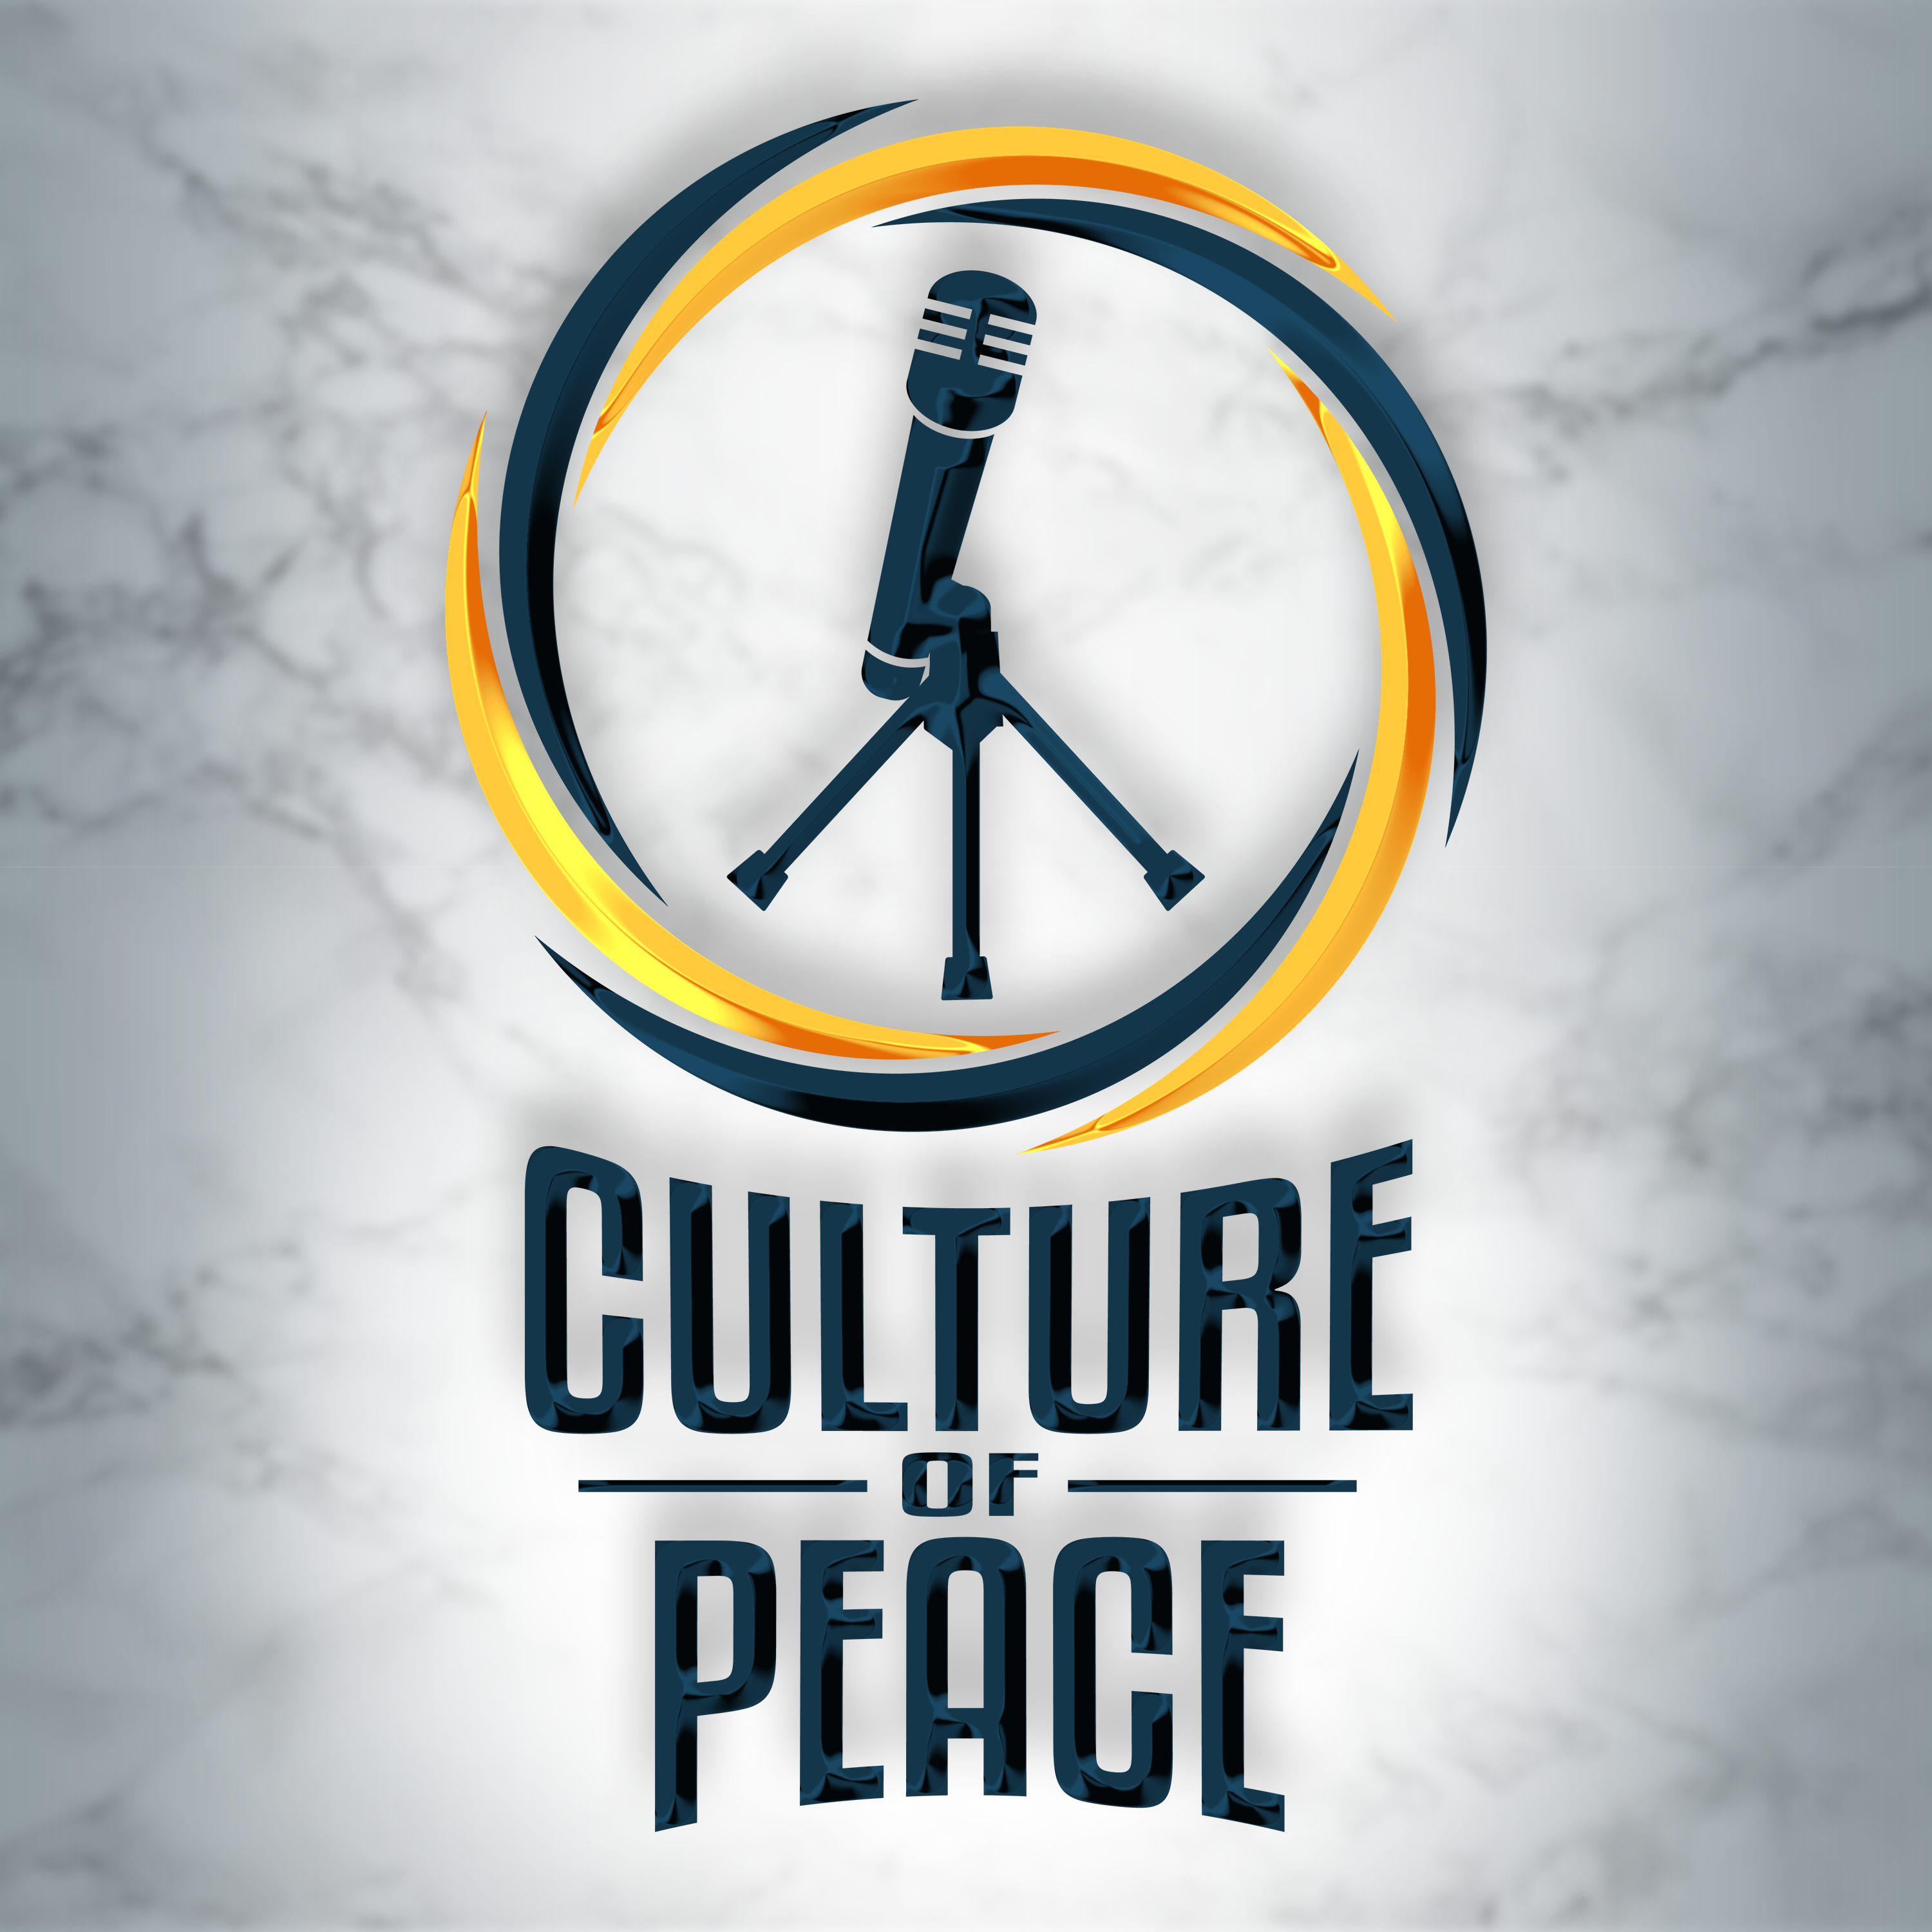 Culture of Peace